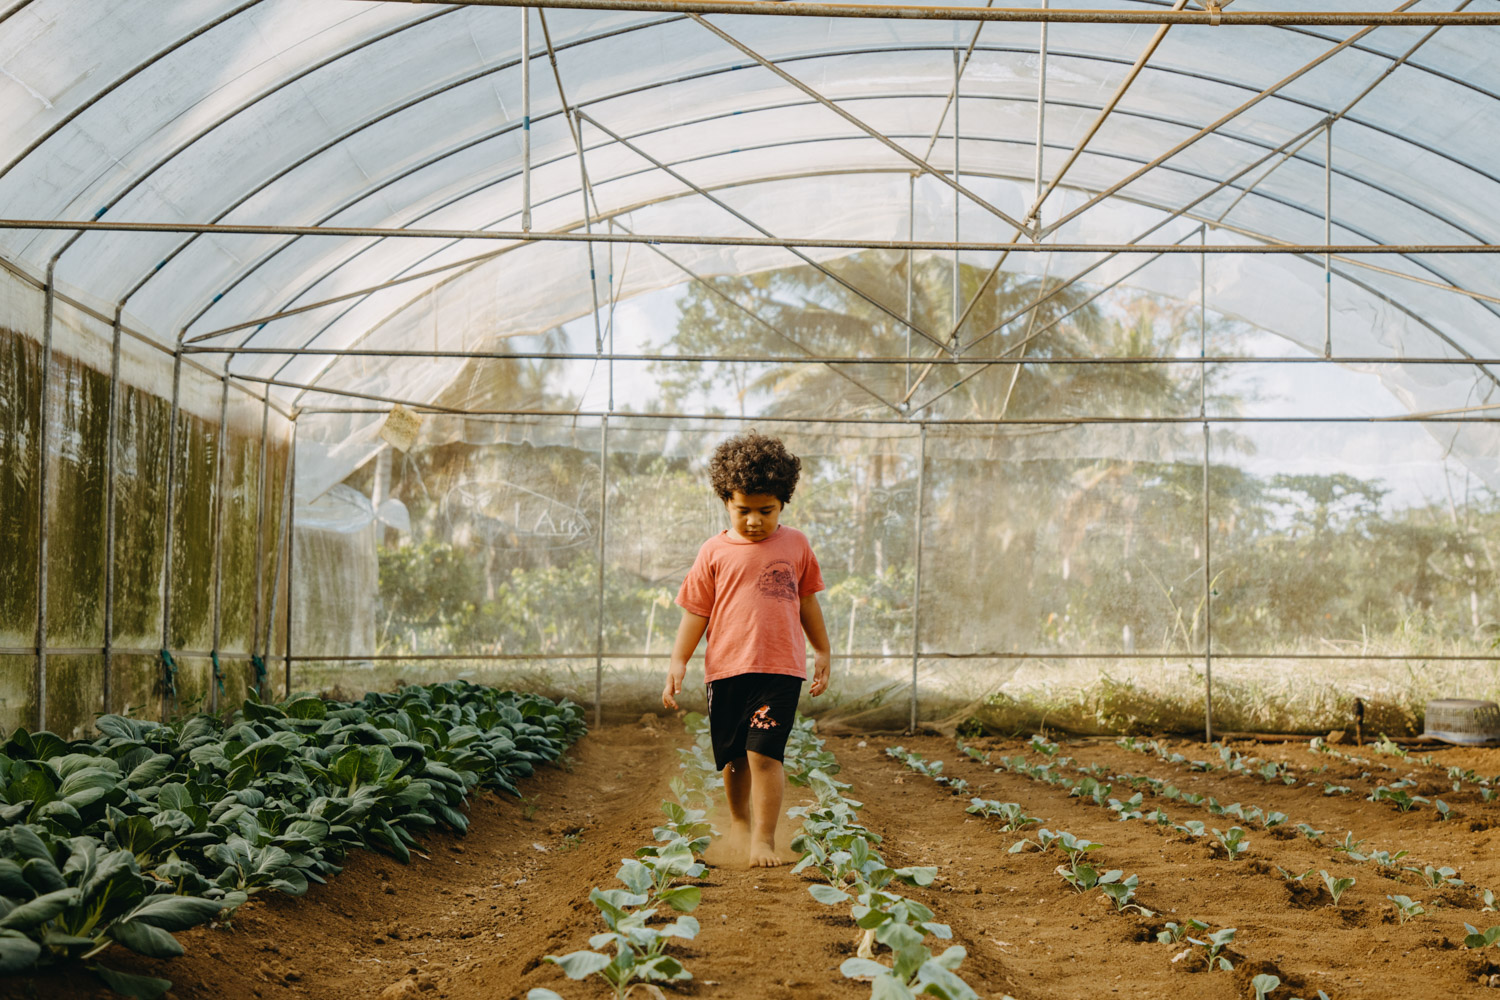 Growingyourfuture-Samoa-eattherainbow-healthyeating-Vegetablefarmer-farmer-agriculture-documentary-photography-documentaryfilm-organicfarming-4COVER